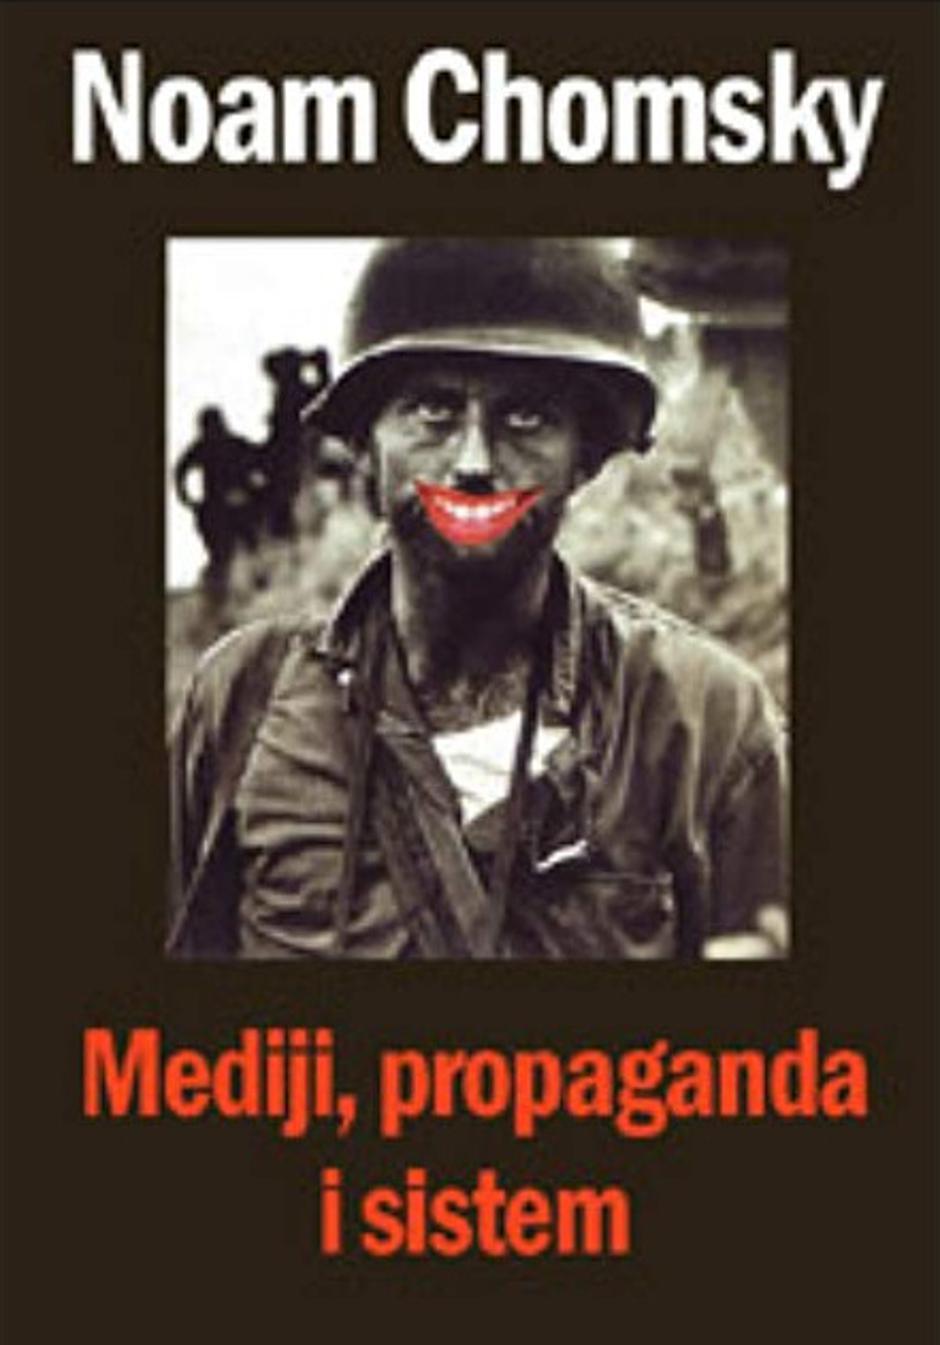 Noam Chomsky, "Mediji, propaganda i sistem" | Author: "Što čitaš?"